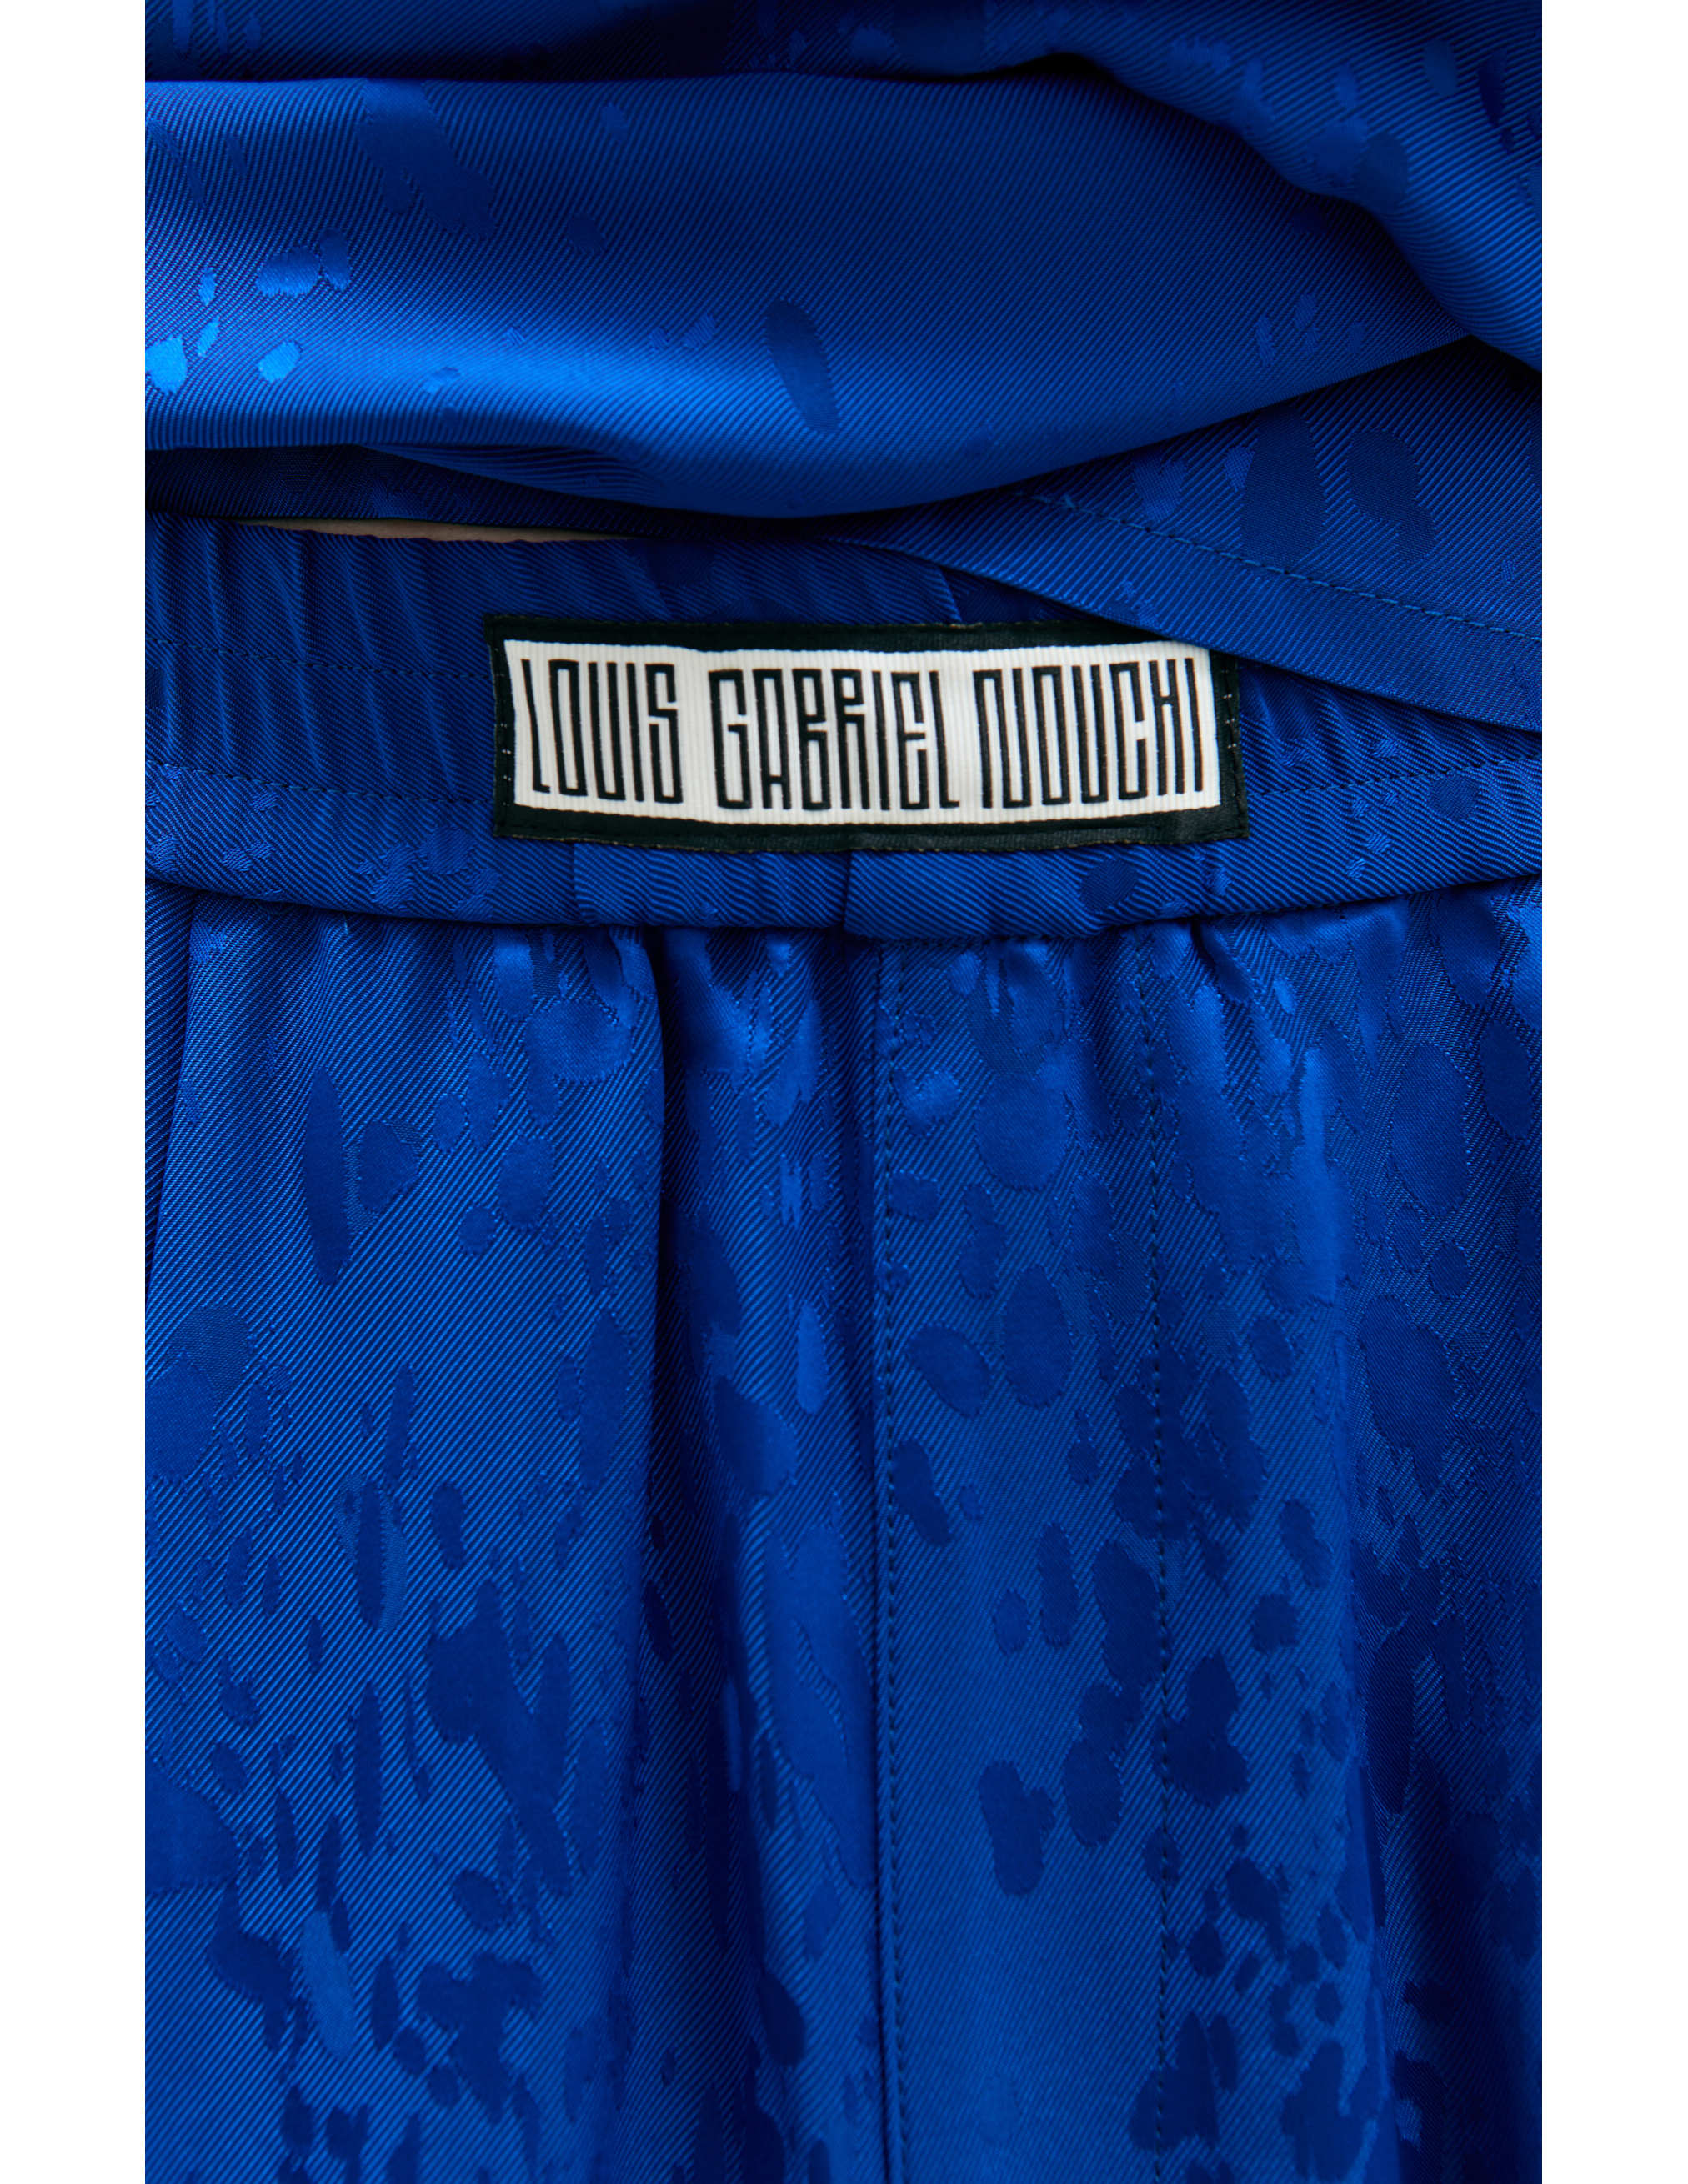 Прямые брюки на резинке LOUIS GABRIEL NOUCHI 0713/T714/029, размер M;L;XL 0713/T714/029 - фото 4